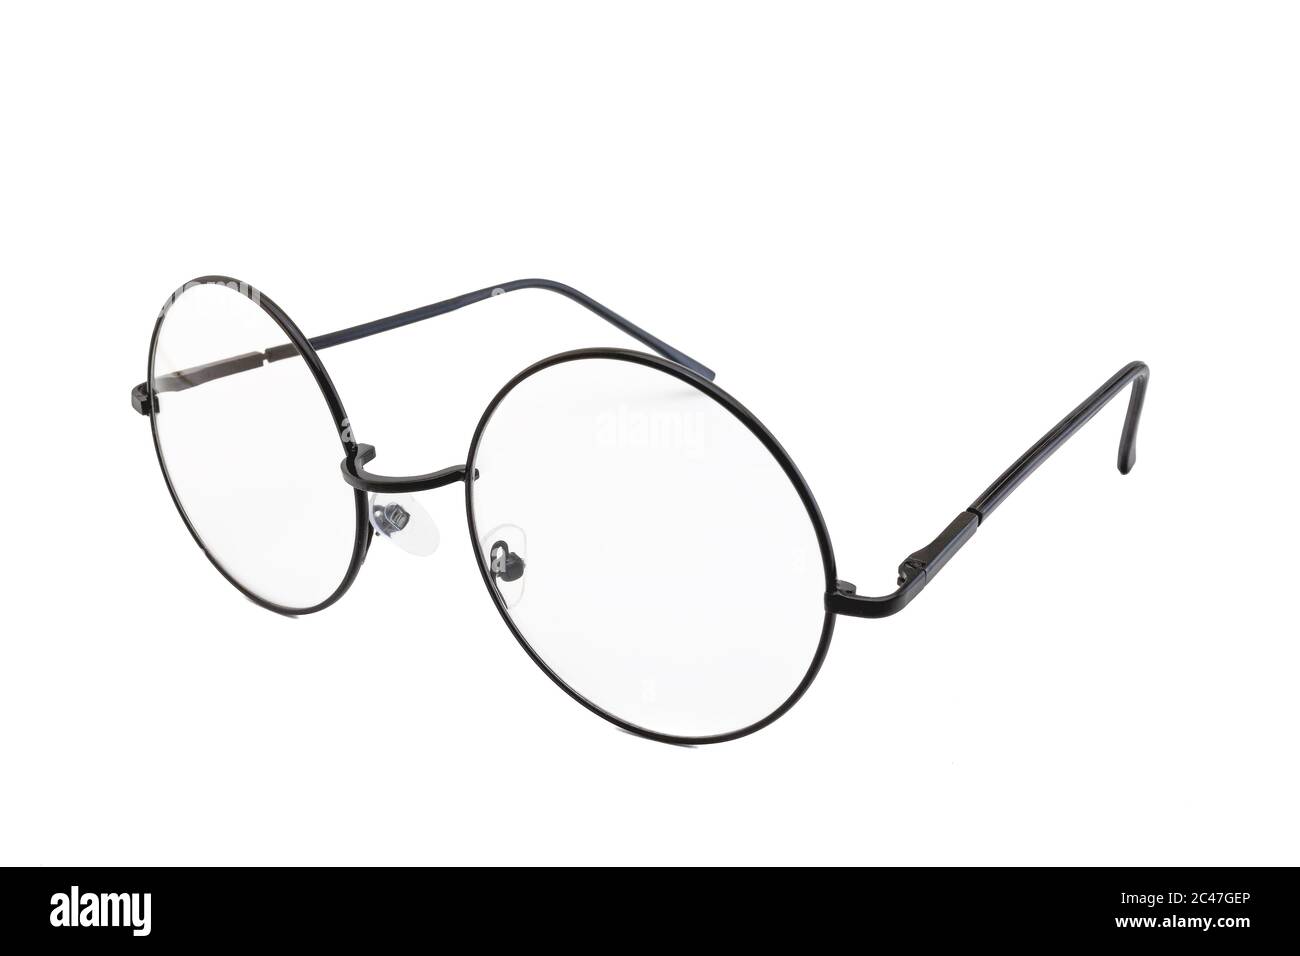 Ovale Brillen im Straßenstil mit dünnem schwarzen Metallrahmen,  durchsichtige Linse, isoliert auf weißem Hintergrund, Seitenansicht  Stockfotografie - Alamy